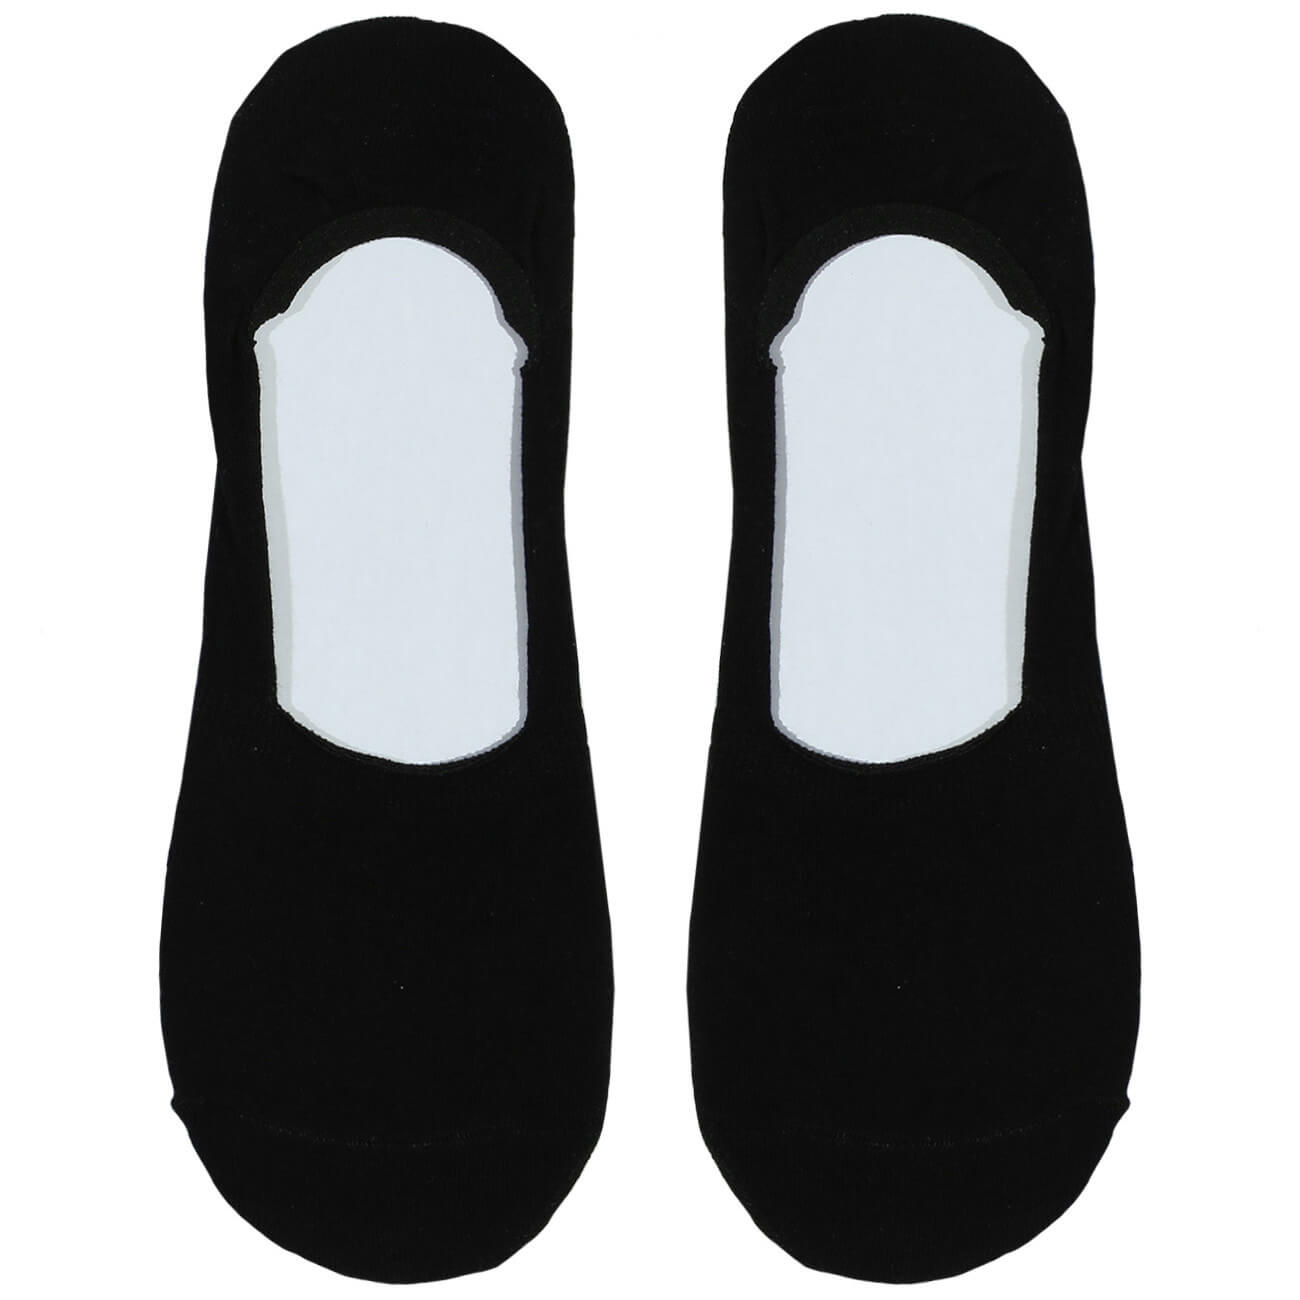 Носки-следки мужские, р. 39-42, хлопок/полиэстер, черные, Basic носки следки женские р 38 41 хлопок полиэстер черные basic